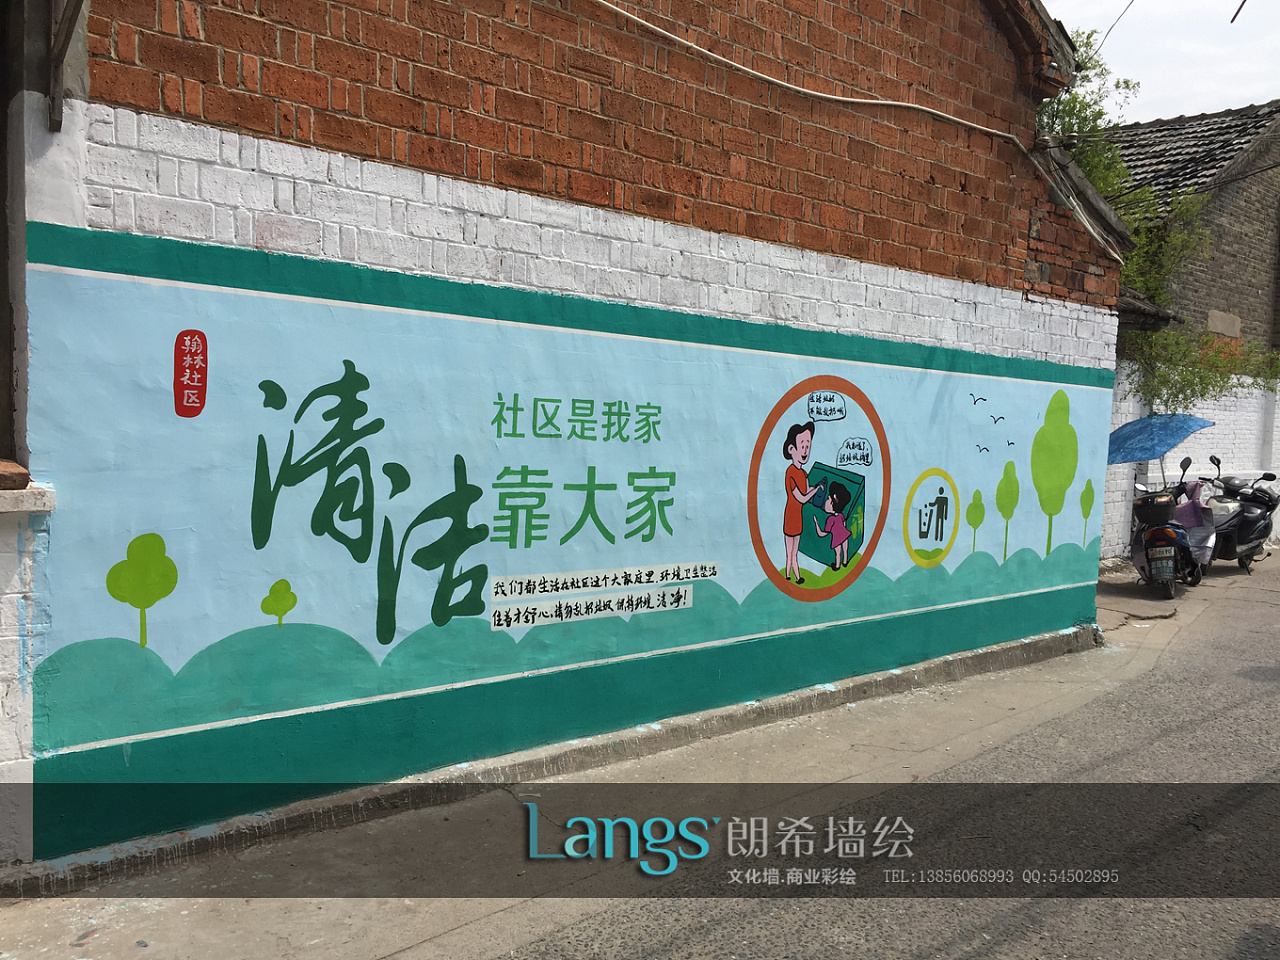 社区文化墙,围墙设计,墙体彩绘,公益围墙宣传画,墙绘素材